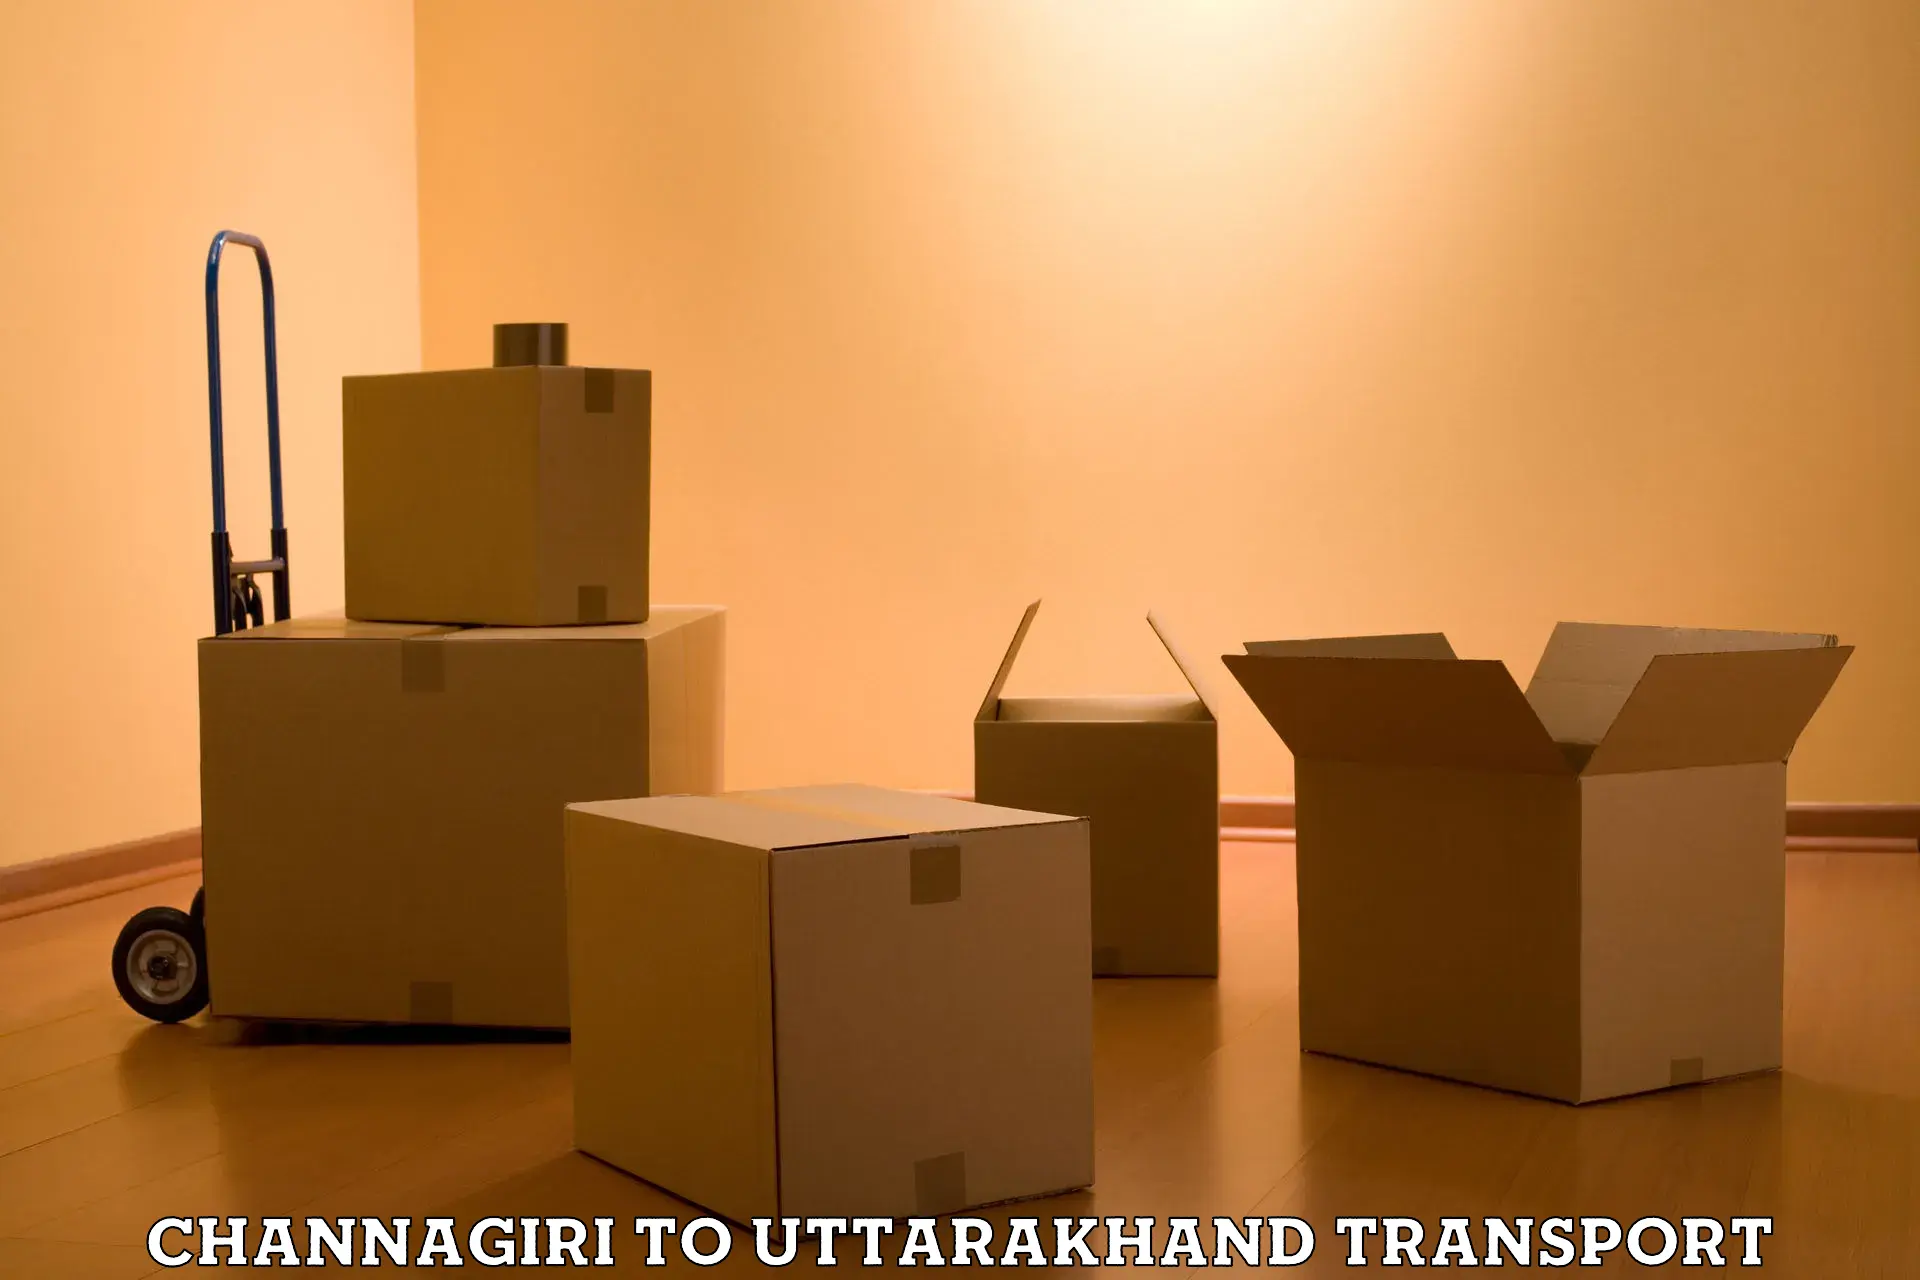 Furniture transport service Channagiri to Dehradun